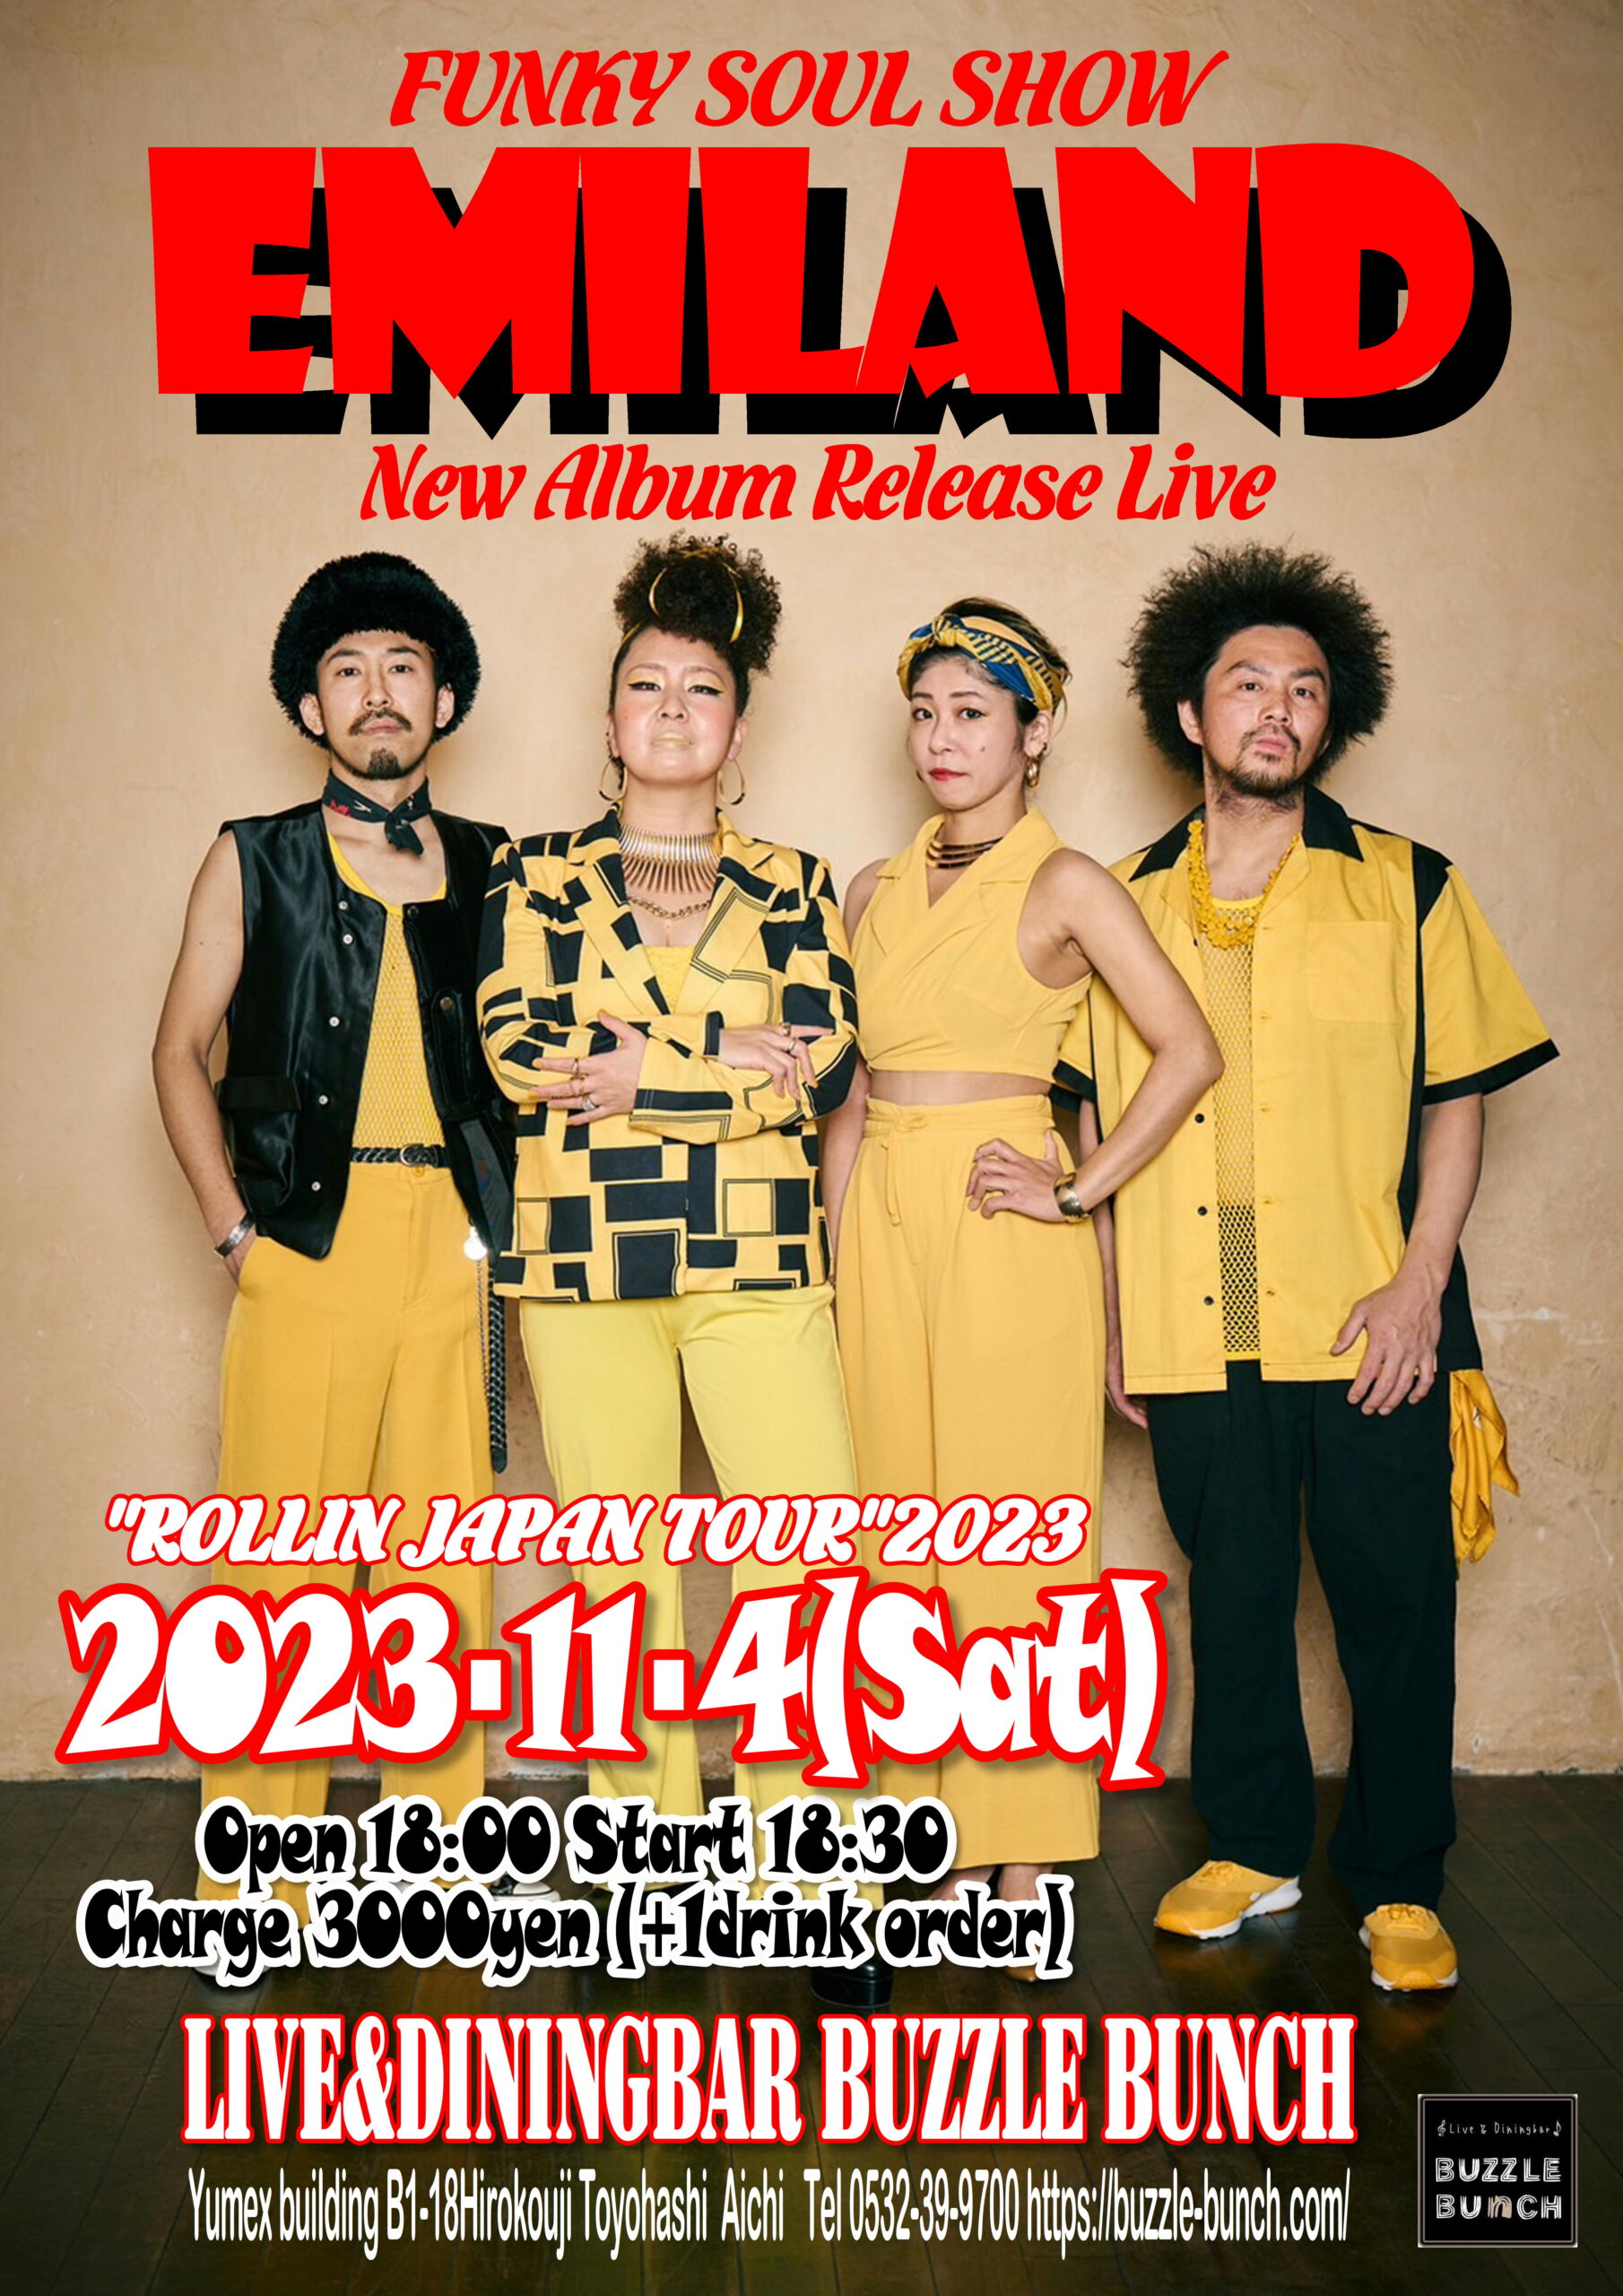 2023年11月4日(Sat) EMILAND New Album Release Live 【ROLLIN JAPAN TOUR 2023】 at BUZZLE BUNCH